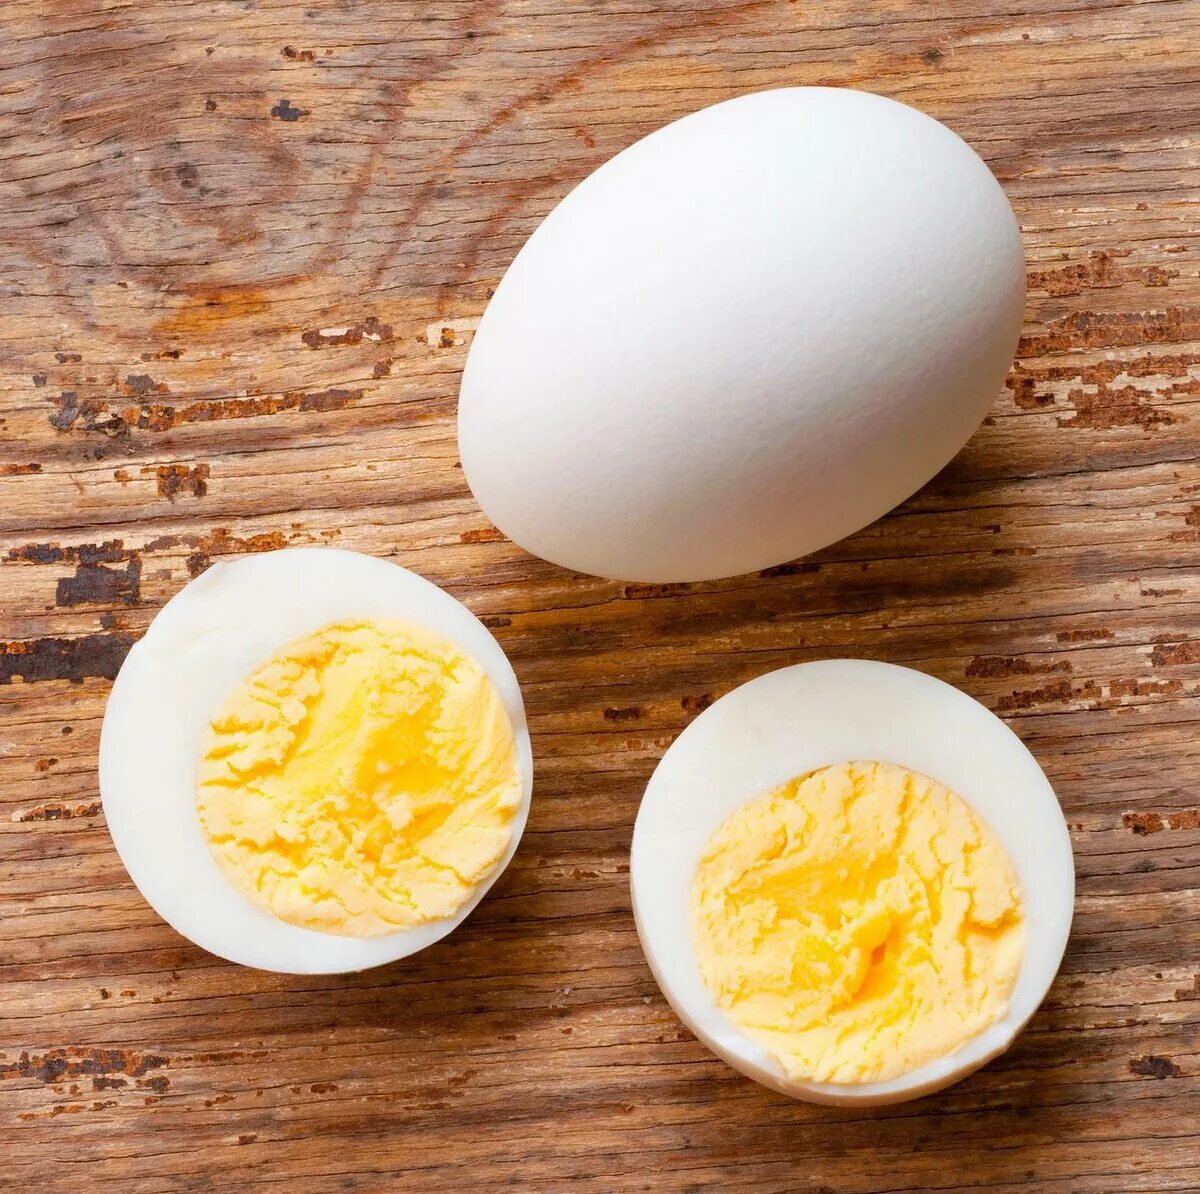 Крошка яйцо. Яйцо вареное вкрутую. Яйца сваренные вкрутую. Яйцо в крутую. Вареные яички.